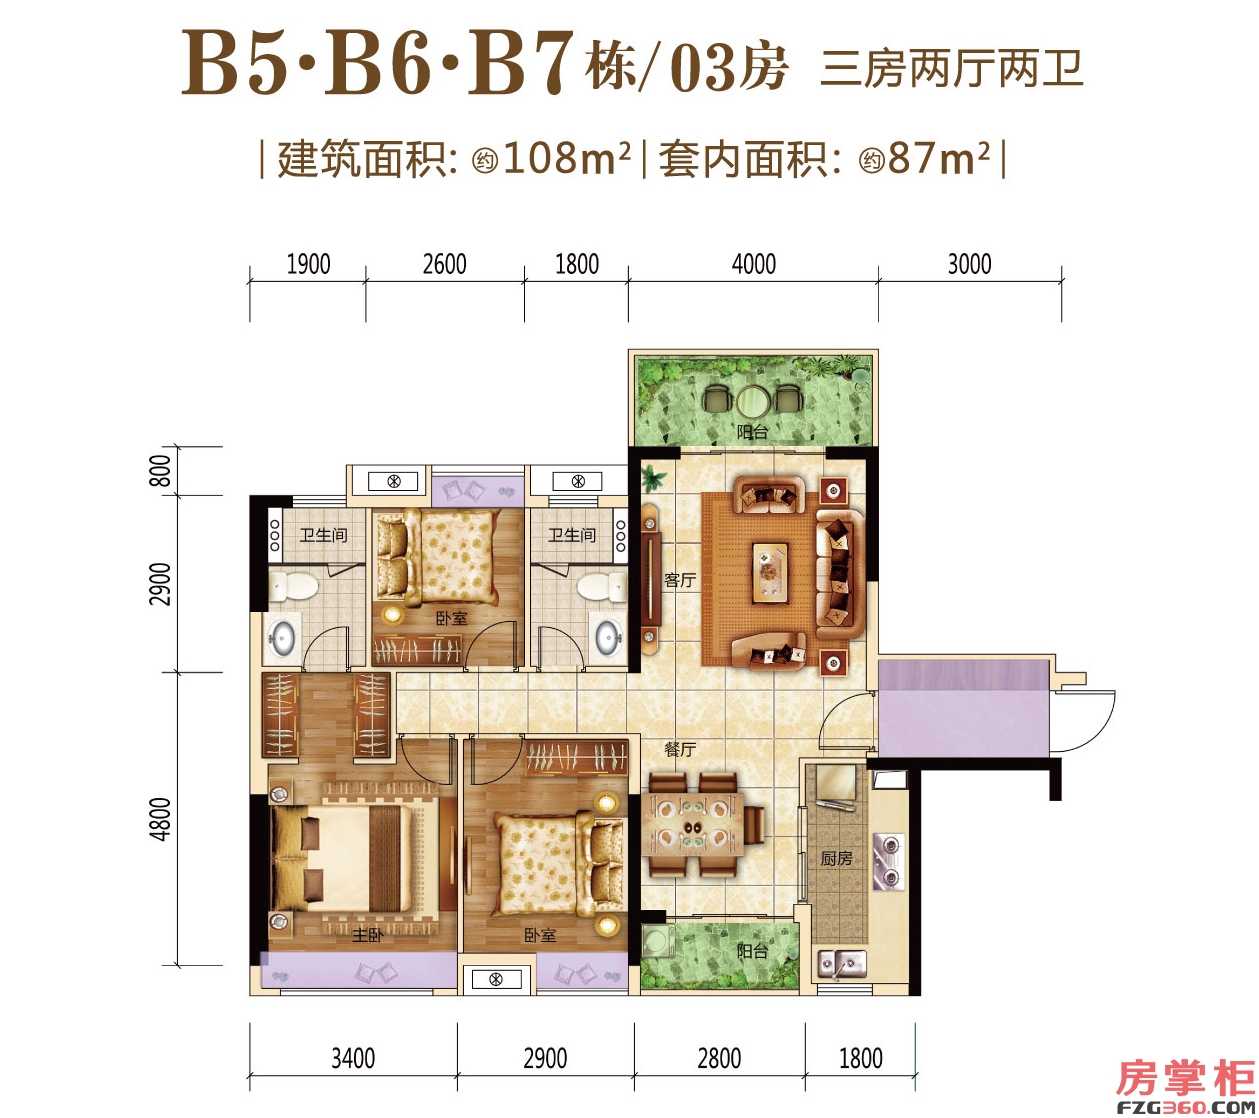 B5/B6/B7栋03房户型图